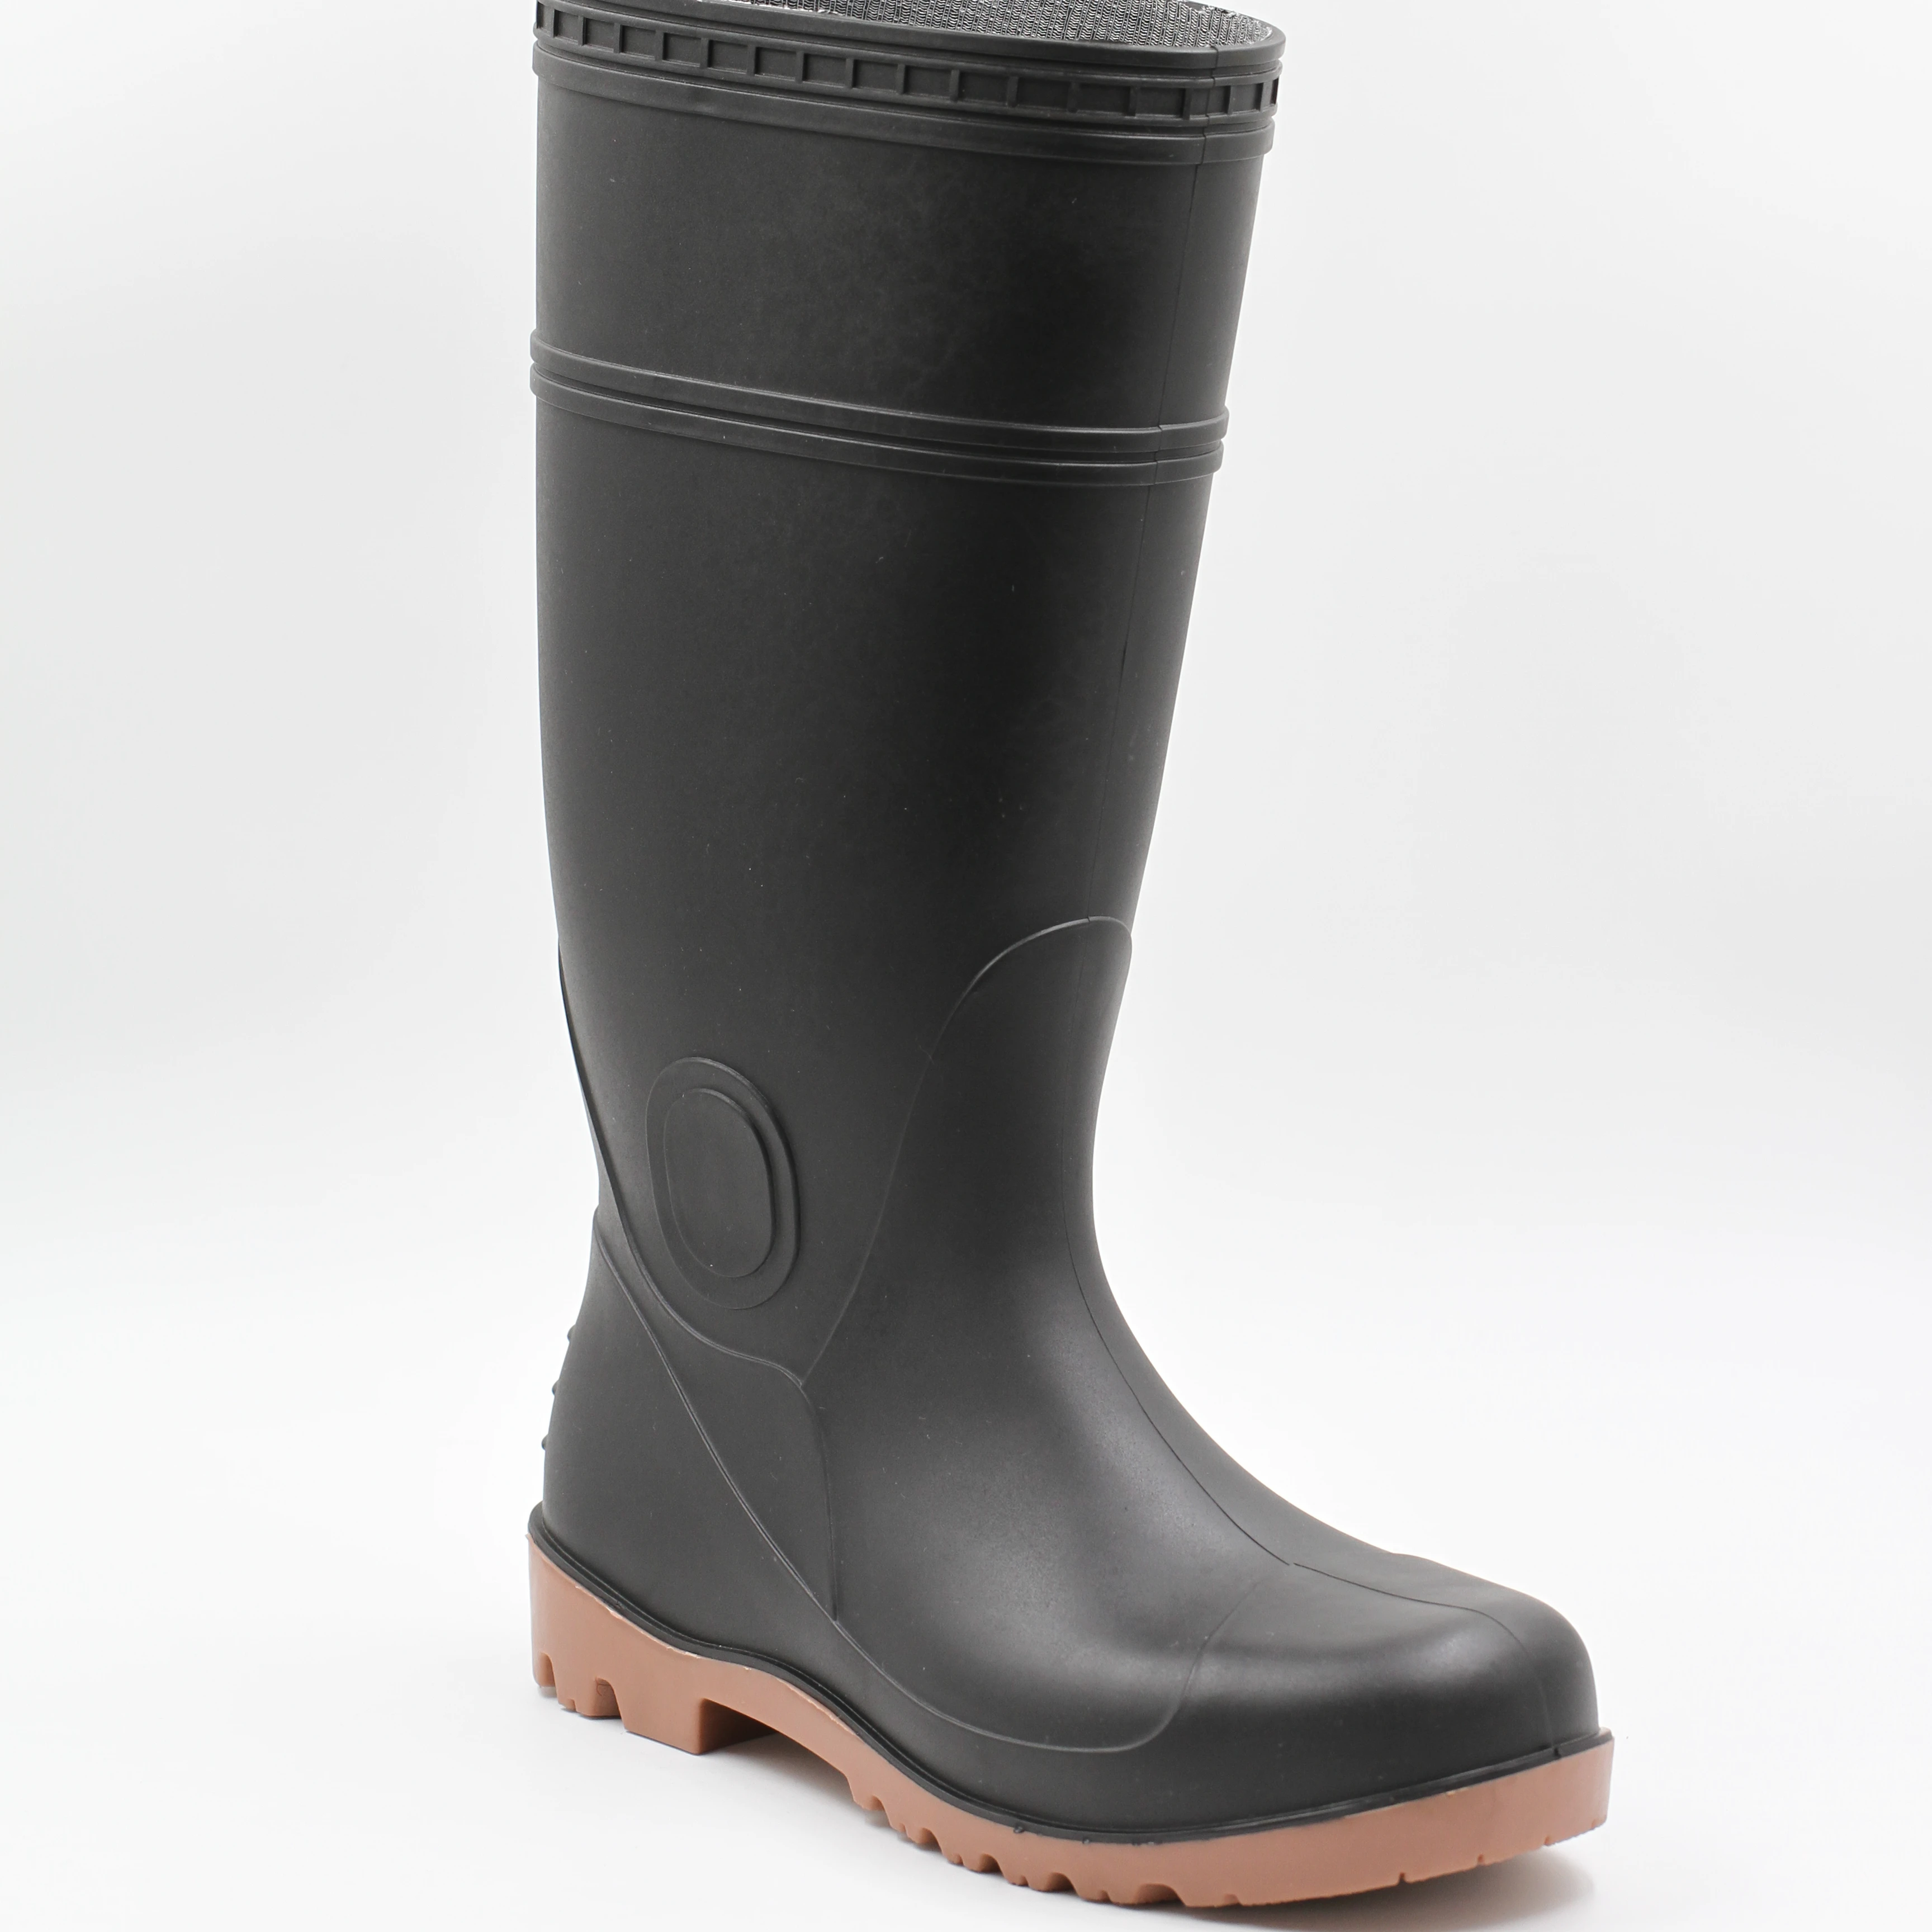 chloe susanna boots ebay